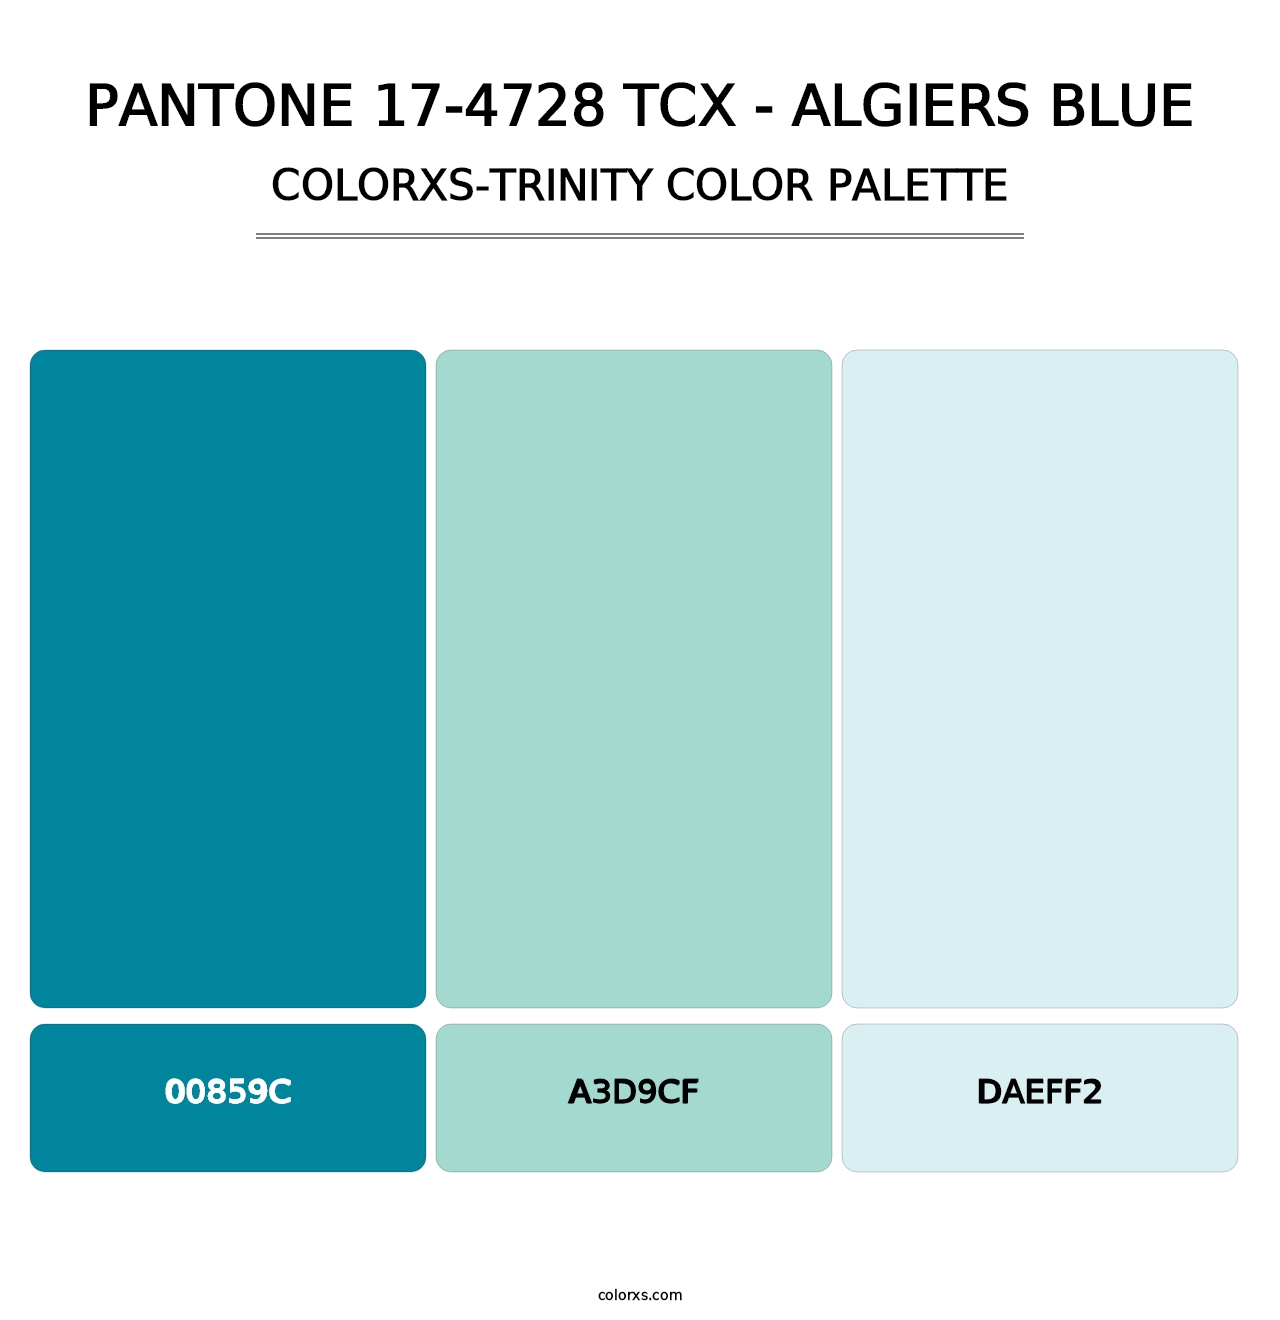 PANTONE 17-4728 TCX - Algiers Blue - Colorxs Trinity Palette